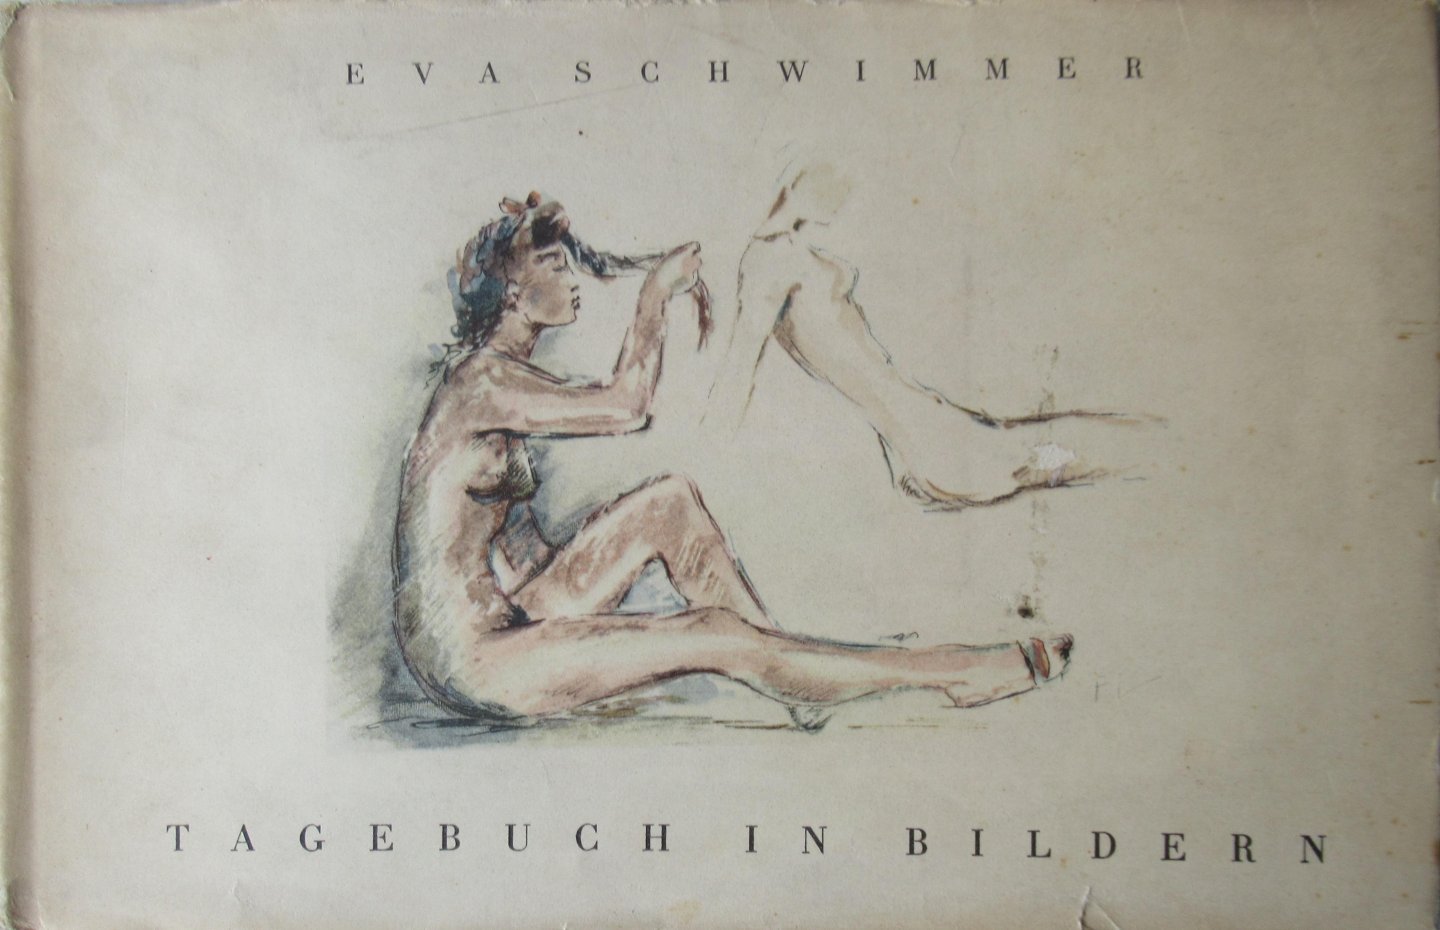 Schwimmer, Eva - Tagebuch in Bildern